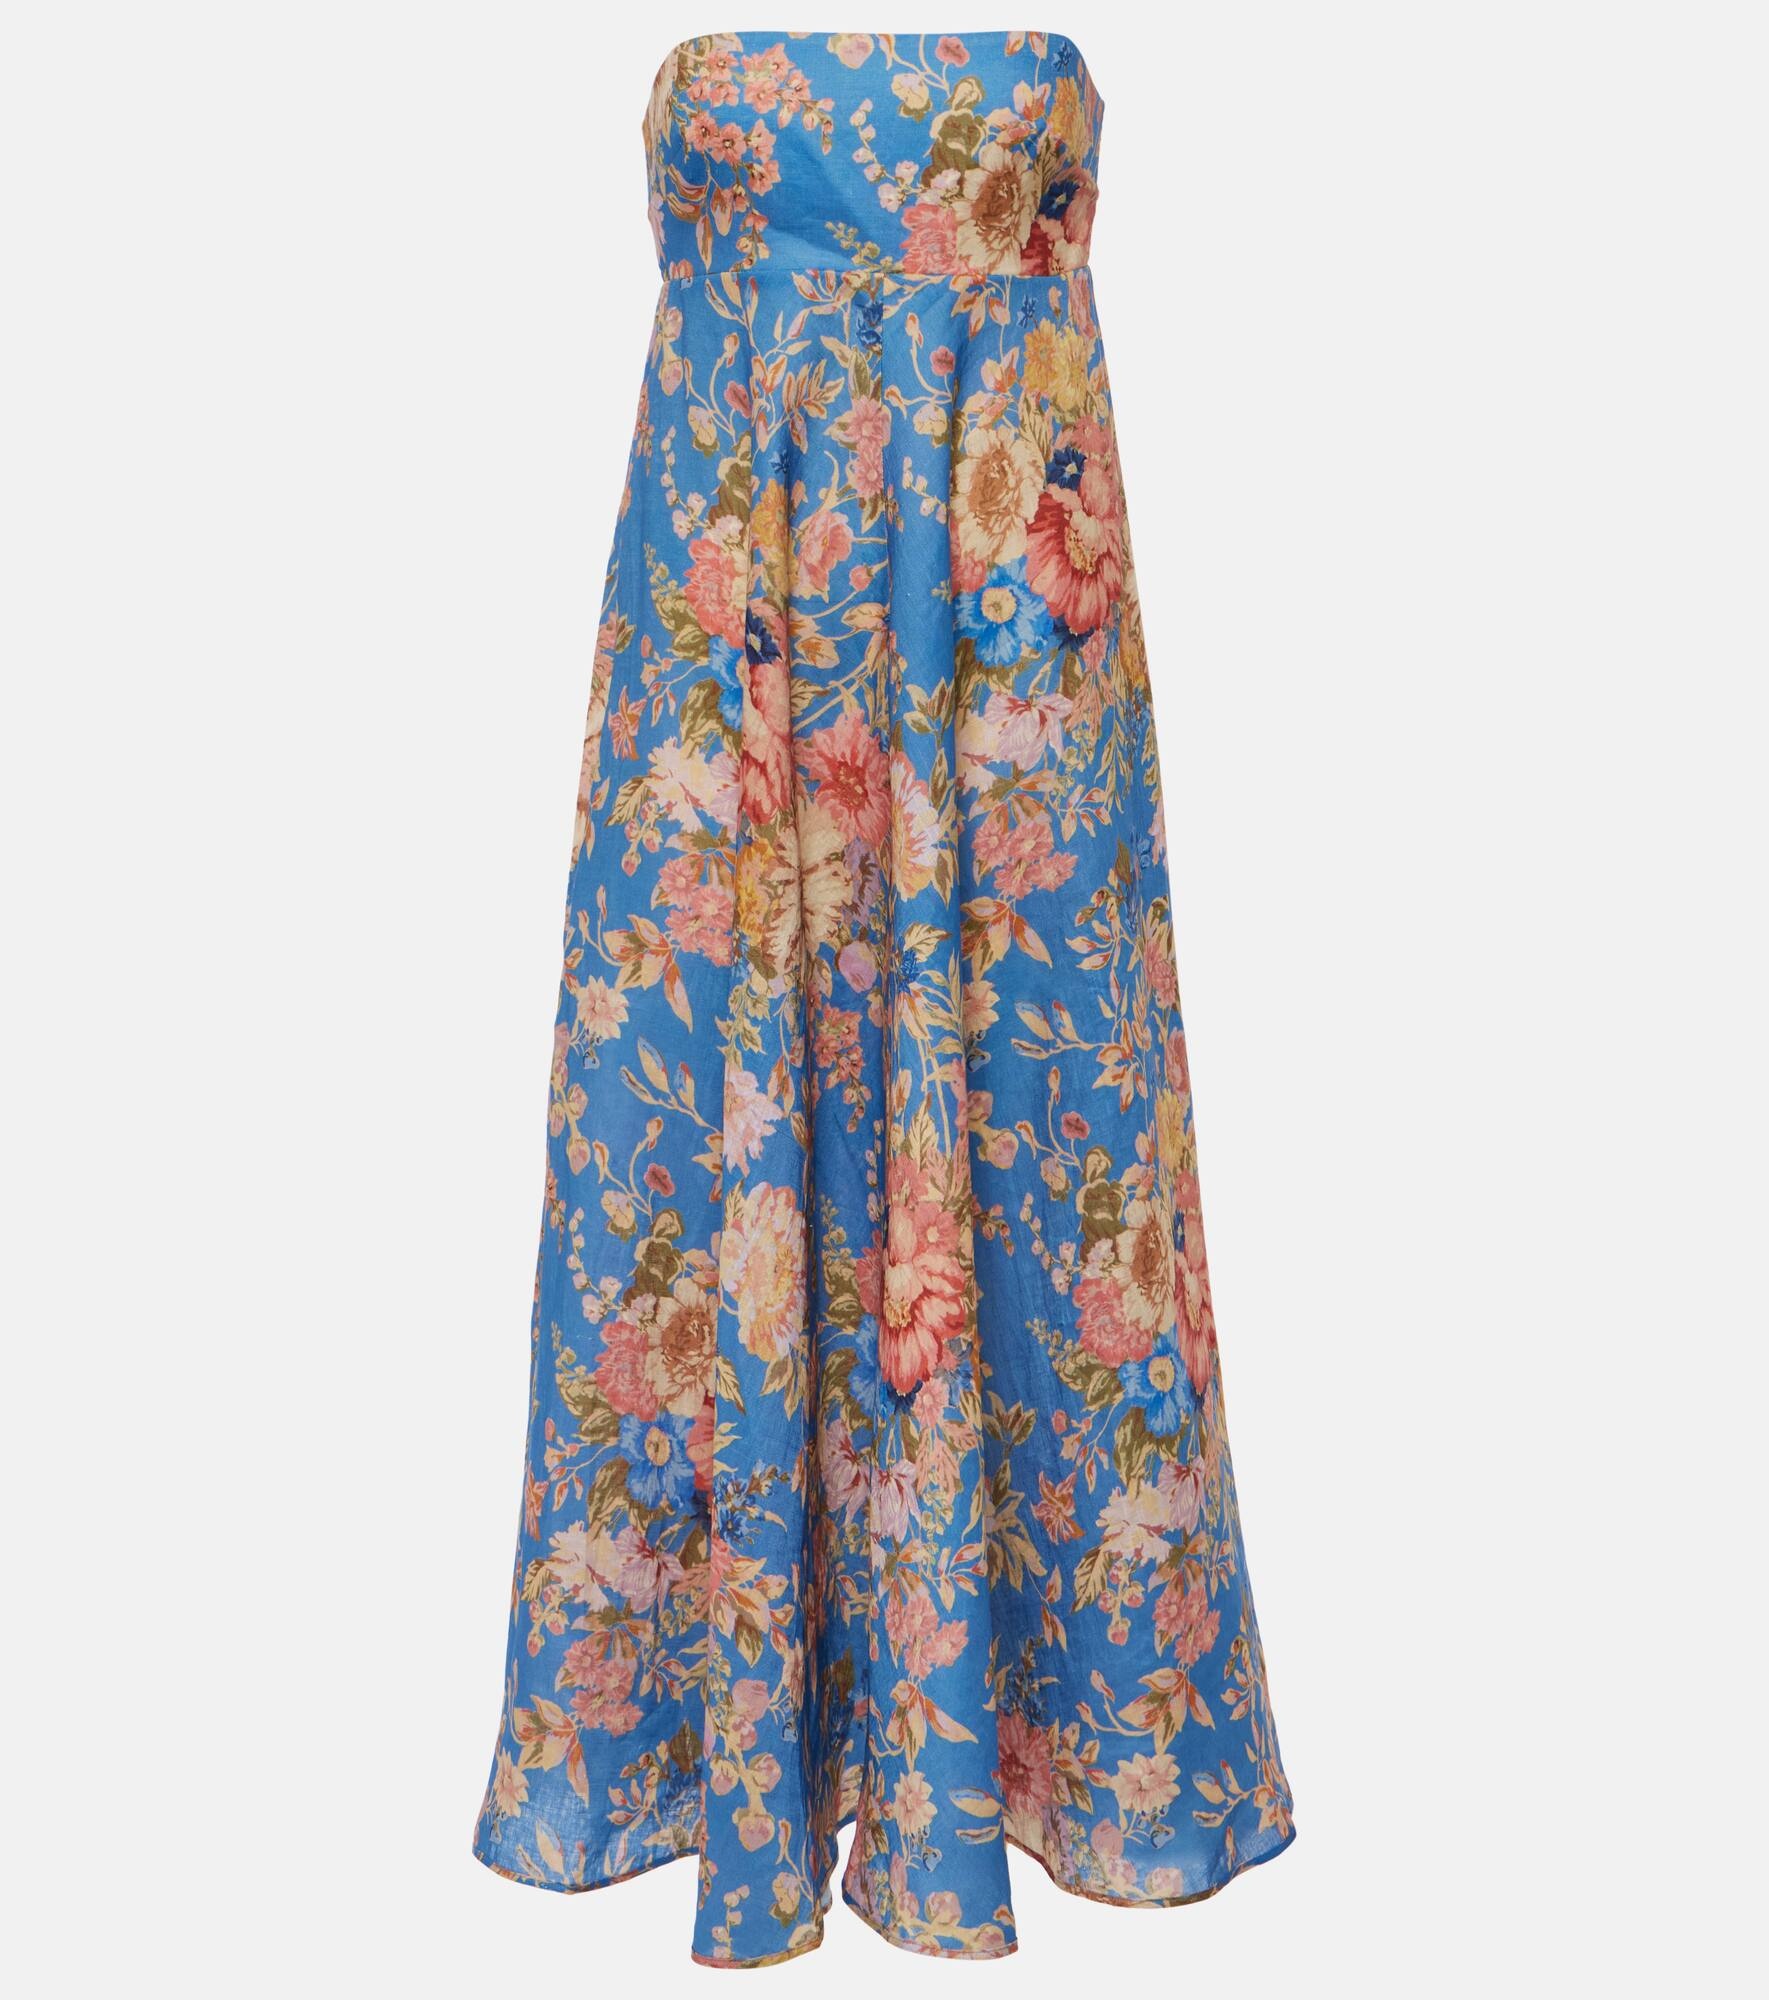 August floral linen midi dress - 1